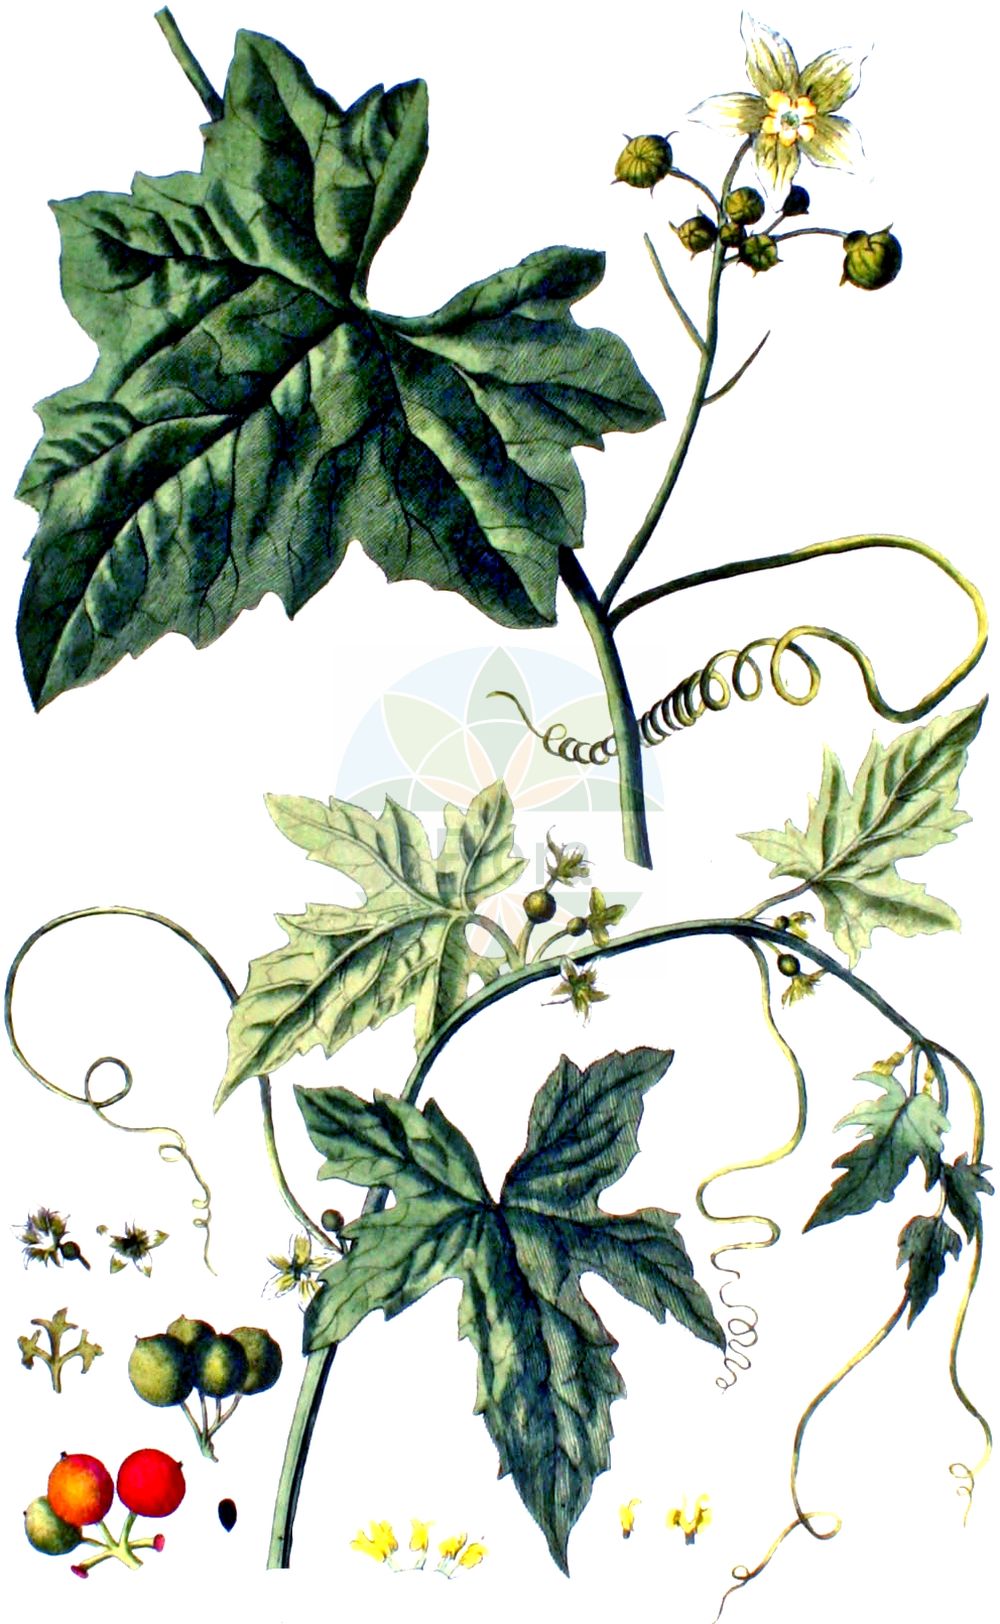 Historische Abbildung von Bryonia dioica (Rotfrüchtige Zaunrübe - White Bryony). Das Bild zeigt Blatt, Bluete, Frucht und Same. ---- Historical Drawing of Bryonia dioica (Rotfrüchtige Zaunrübe - White Bryony). The image is showing leaf, flower, fruit and seed.(Bryonia dioica,Rotfrüchtige Zaunrübe,White Bryony,Bryonia digyna,Bryonia dioica,Bryonia sicula,Rotfruechtige Zaunruebe,Rotbeerige Zaunruebe,Rote Zaunruebe,White Bryony,Common Bryony,Cretan Bryony,Red-berried Bryony,Red-berry Bryony,Red Bryony,Bryonia,Zaunrübe,Bryony,Cucurbitaceae,Kürbisgewächse,Cucurbit family,Blatt,Bluete,Frucht,Same,leaf,flower,fruit,seed,Kops (1800-1934))